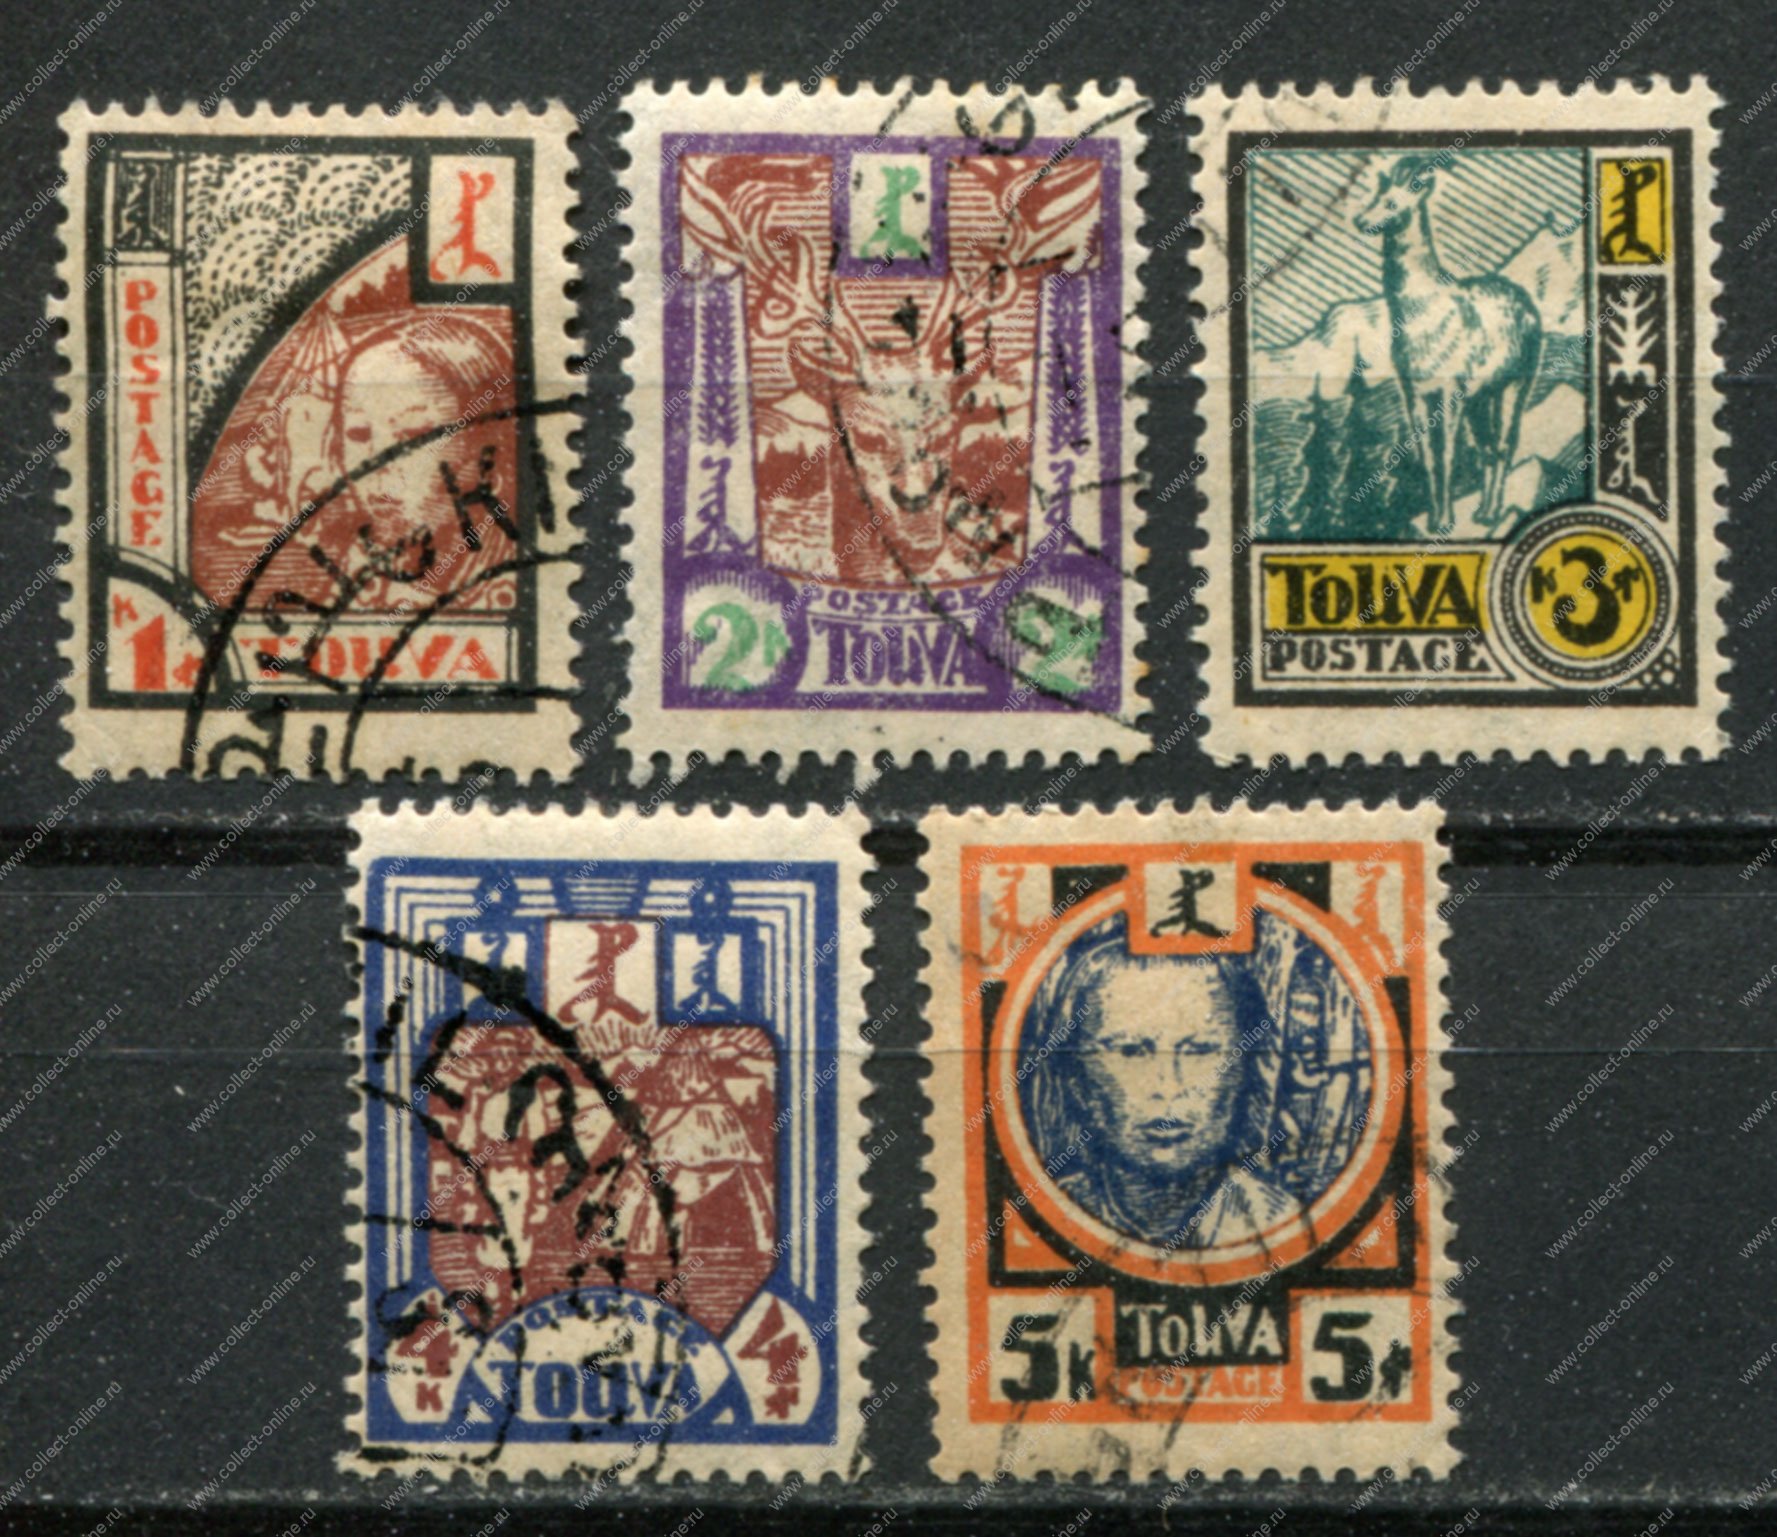 Выпуски почтовых марок россии